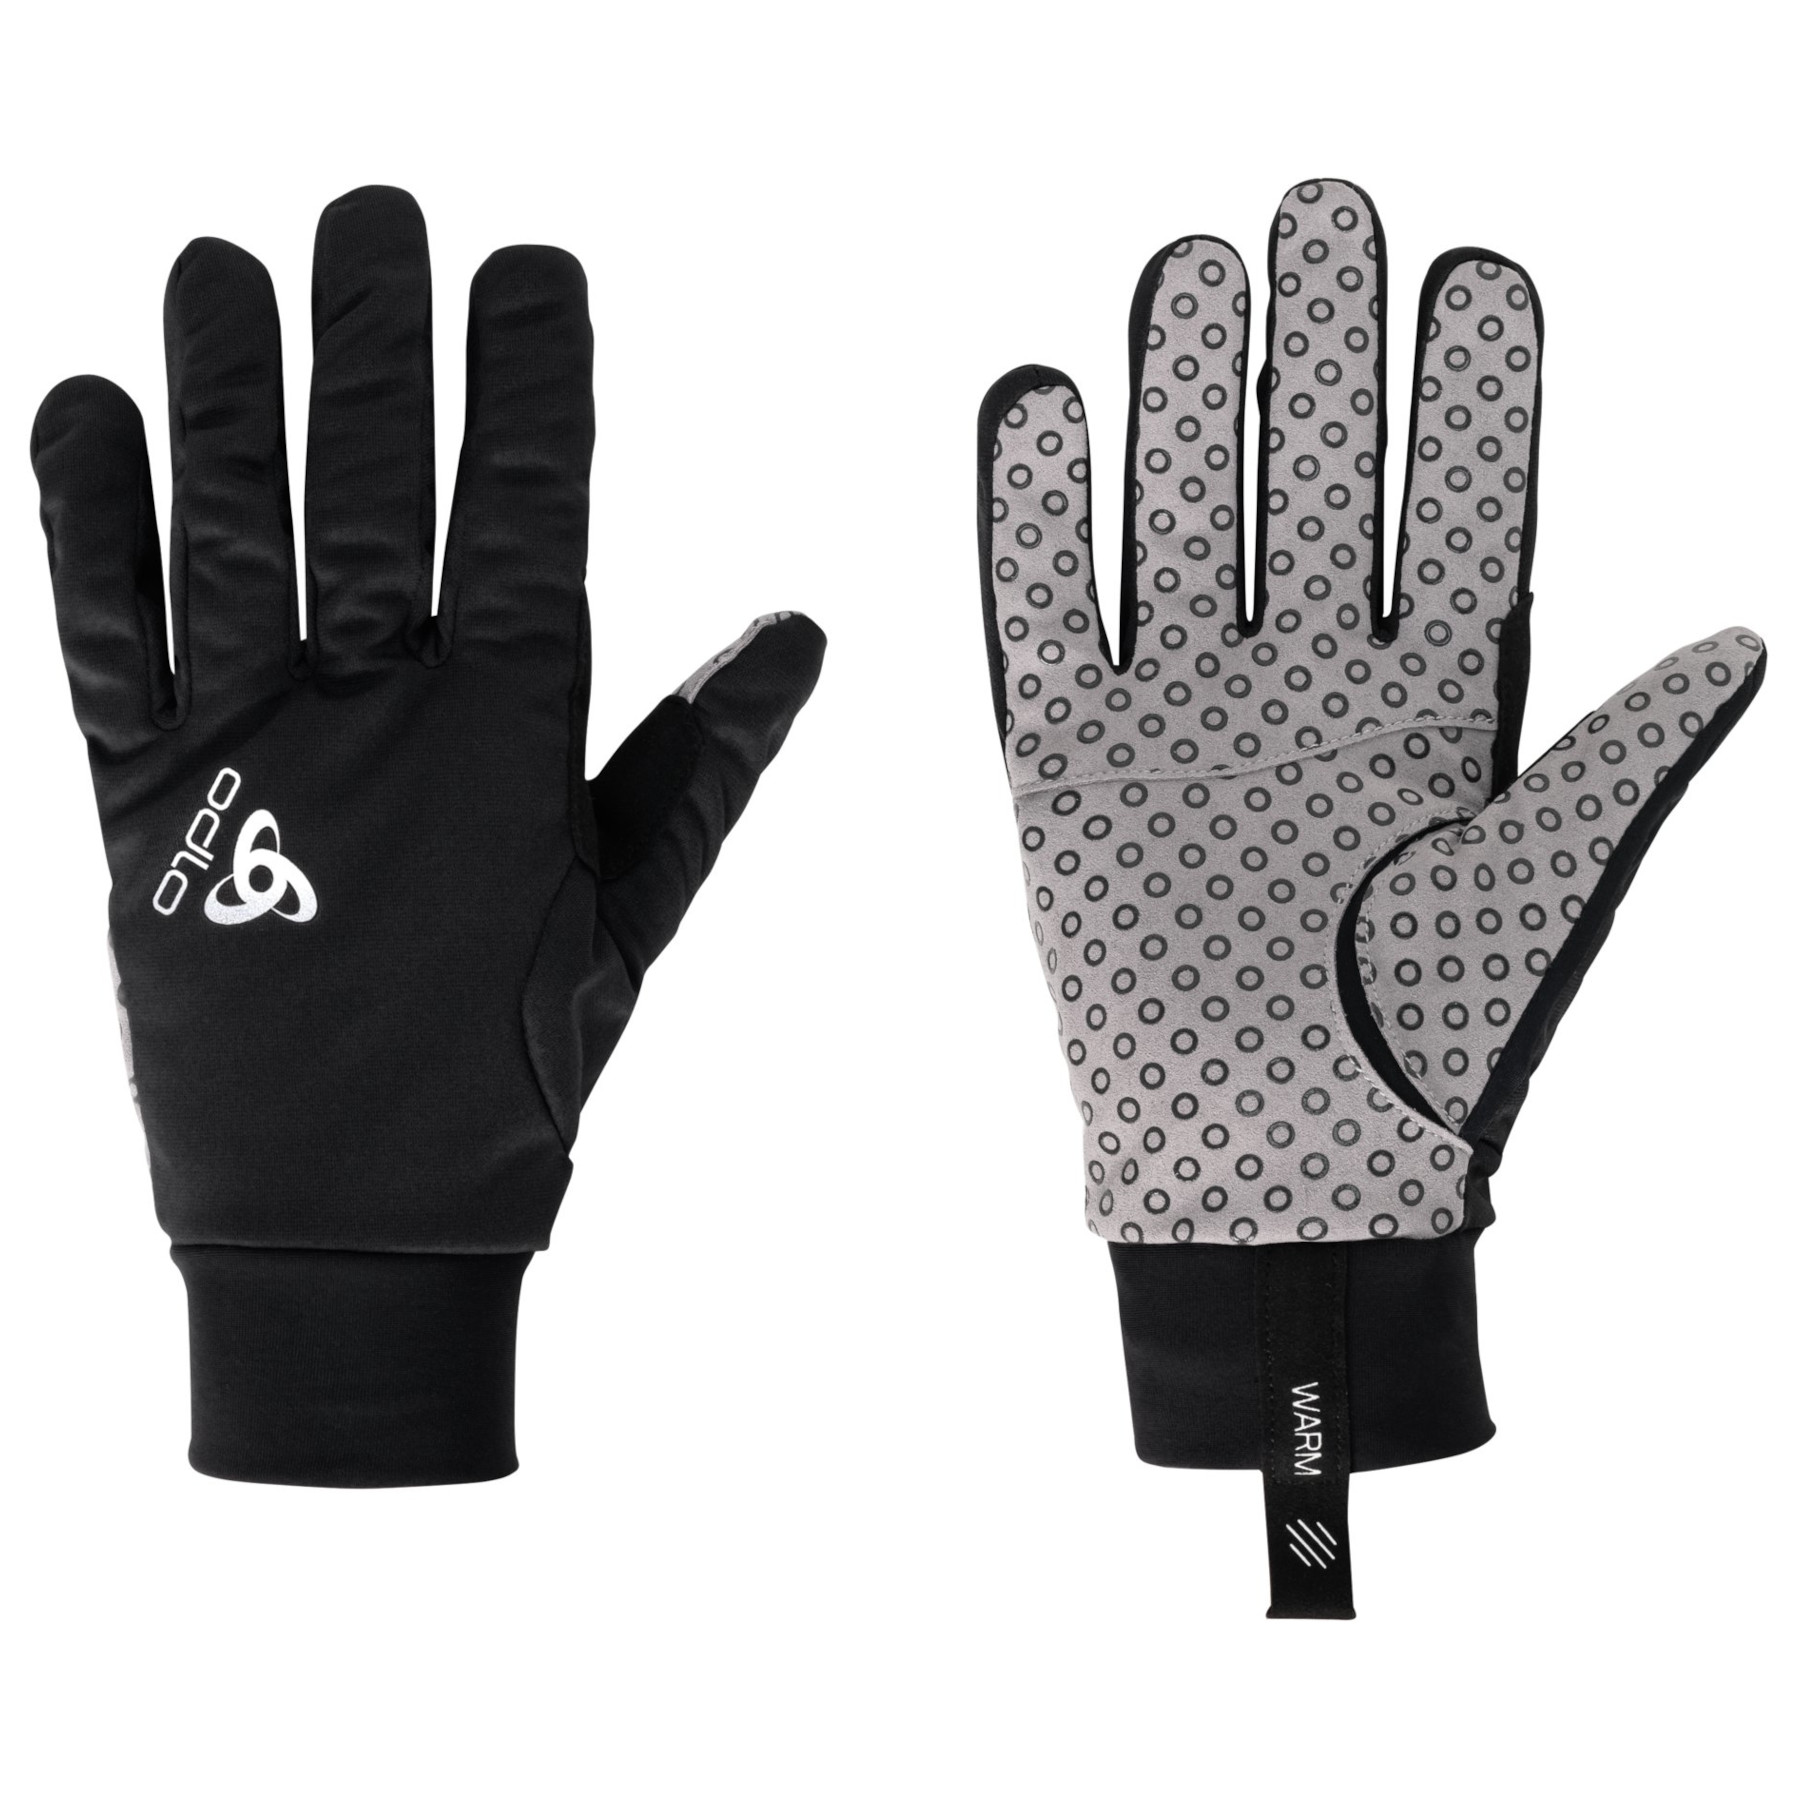 Produktbild von Odlo Aeolus Warm Handschuhe - schwarz